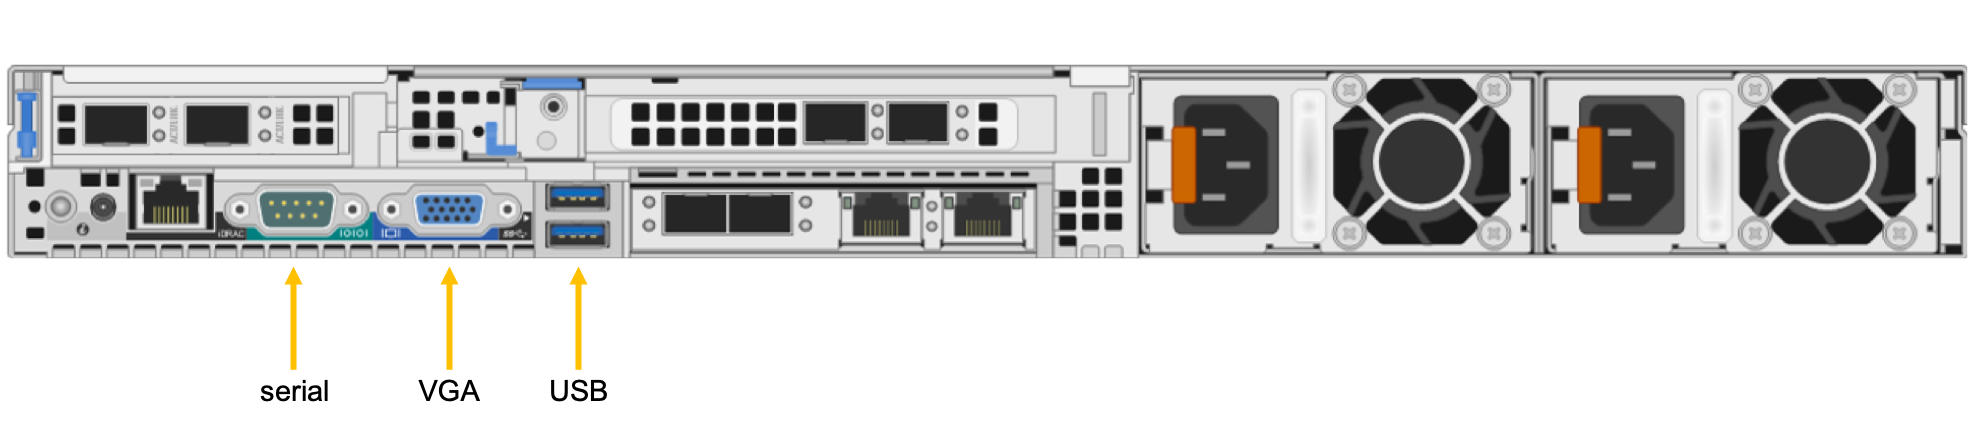 diagrama de back-end do Azure FXT Edge Filer com portas de série, VGA e USB etiquetadas